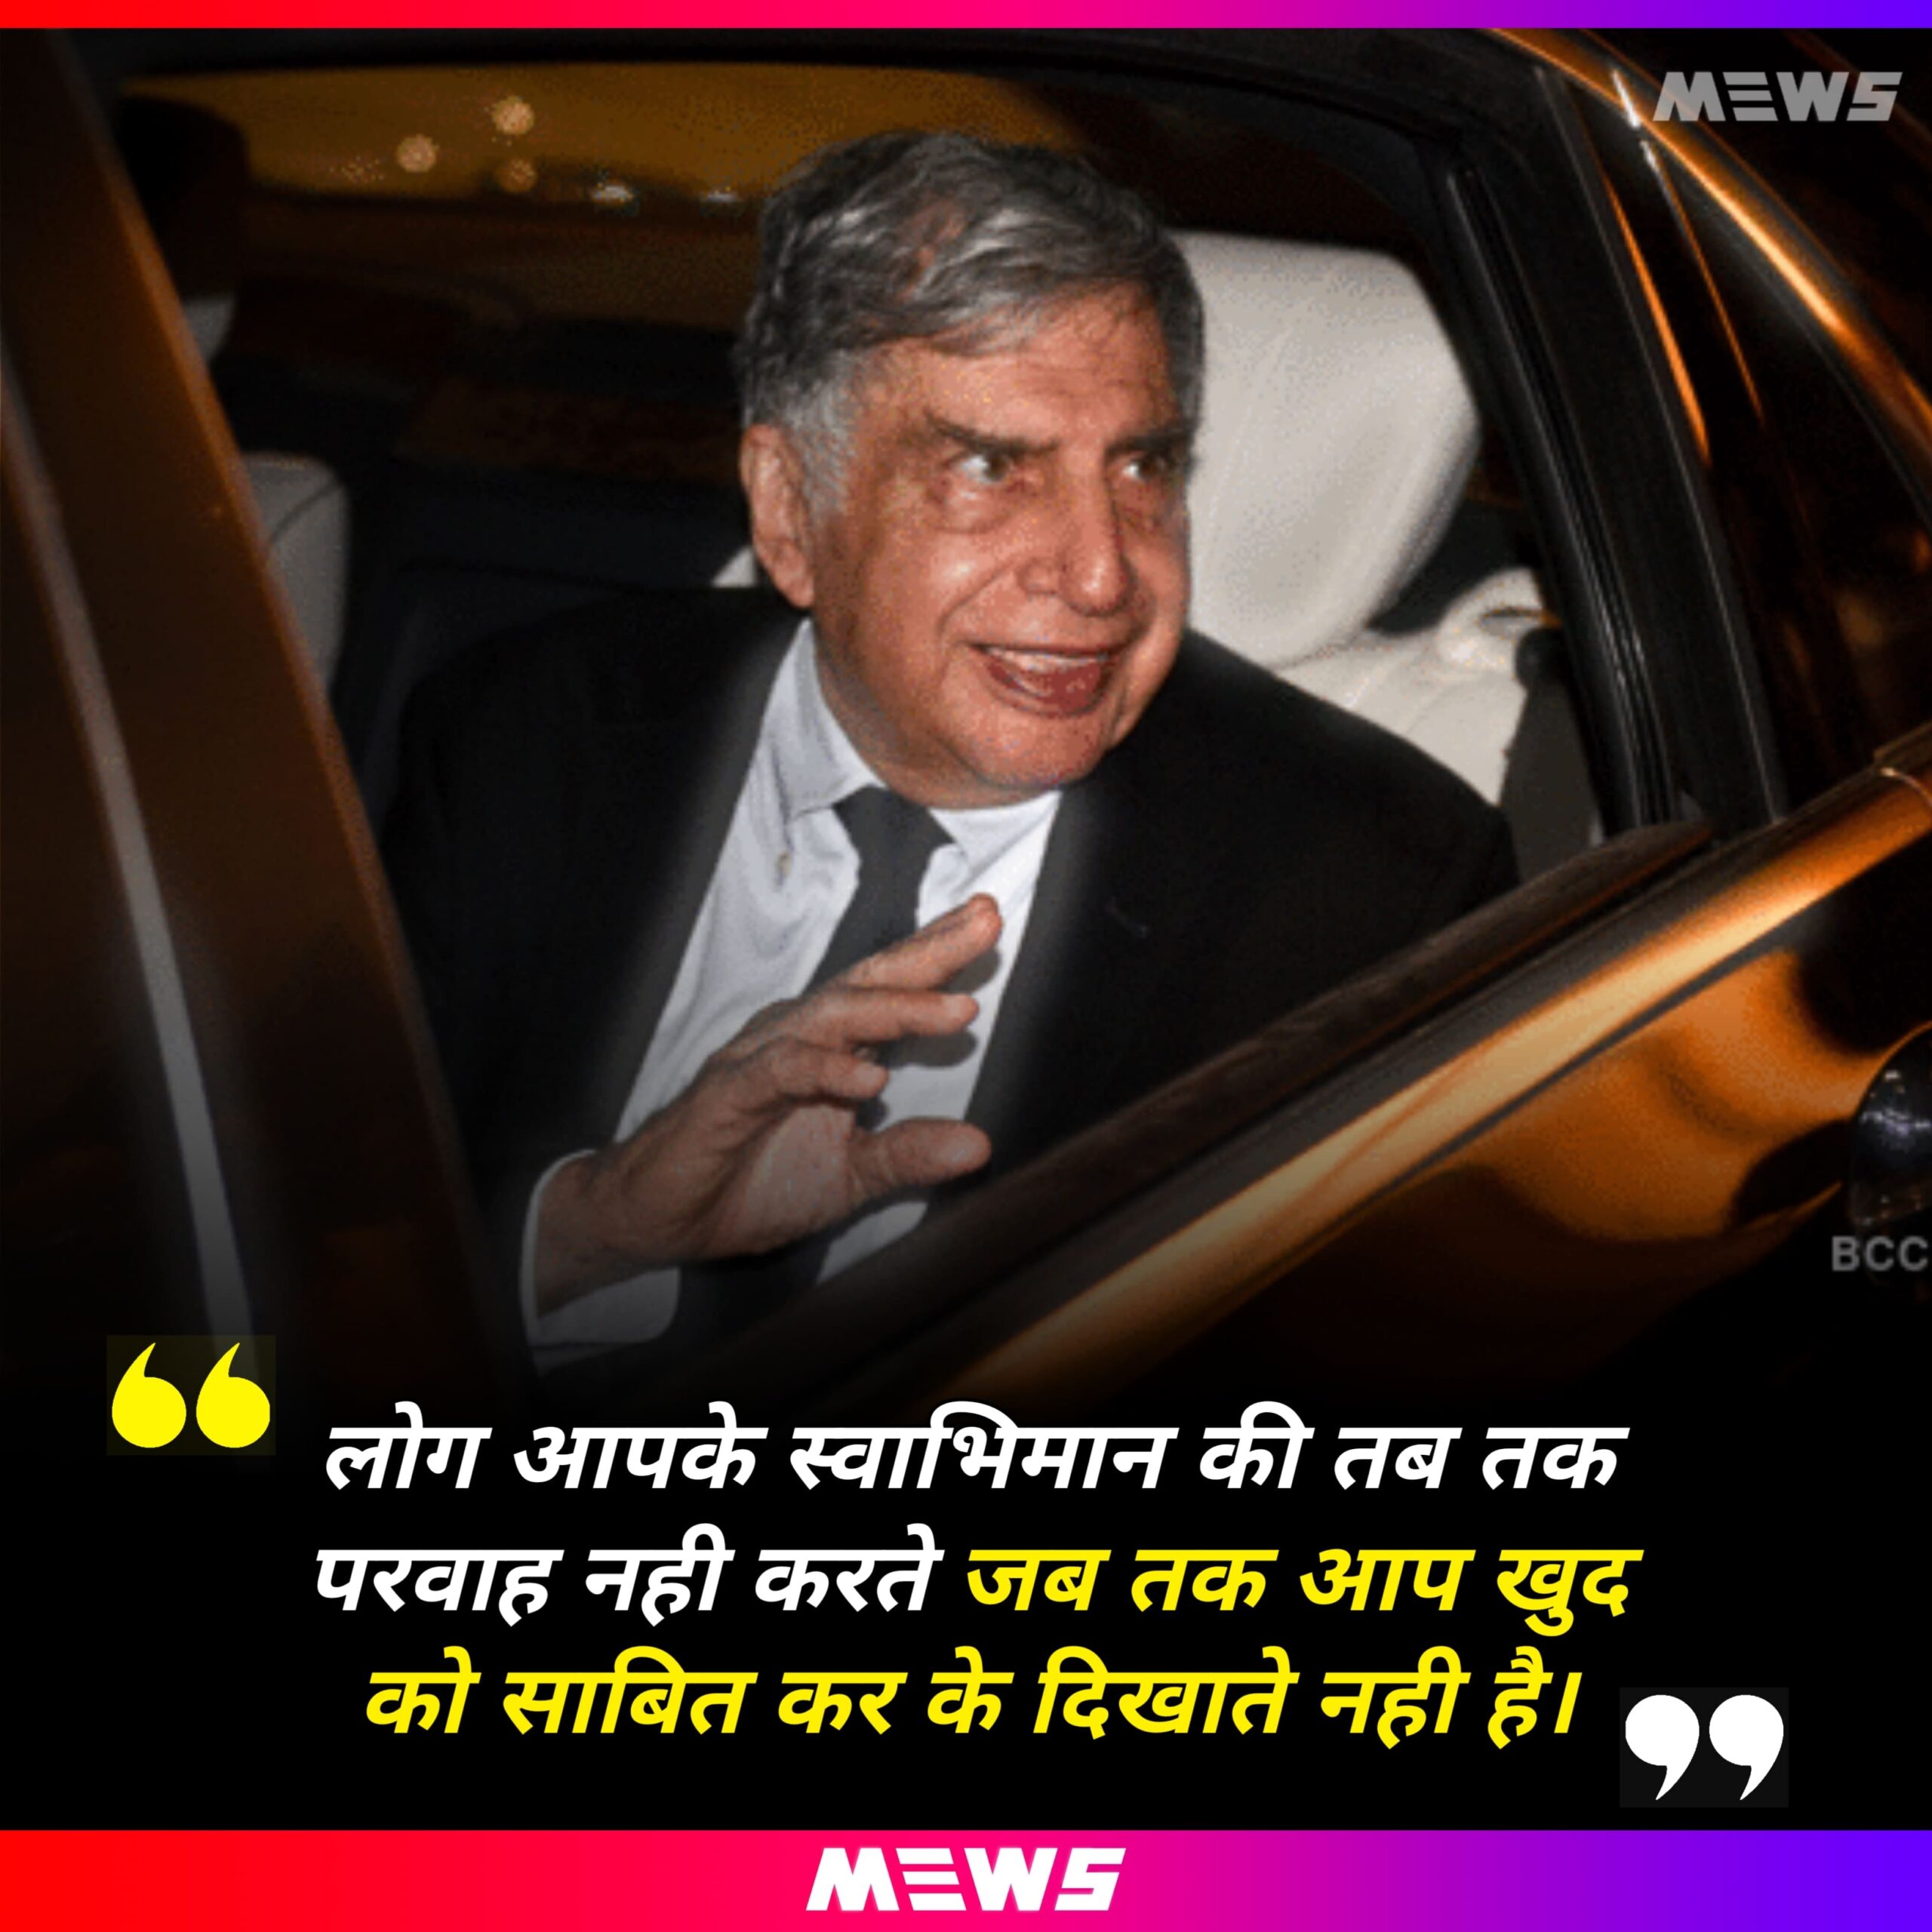 Ratan Tata quotes in Hindi